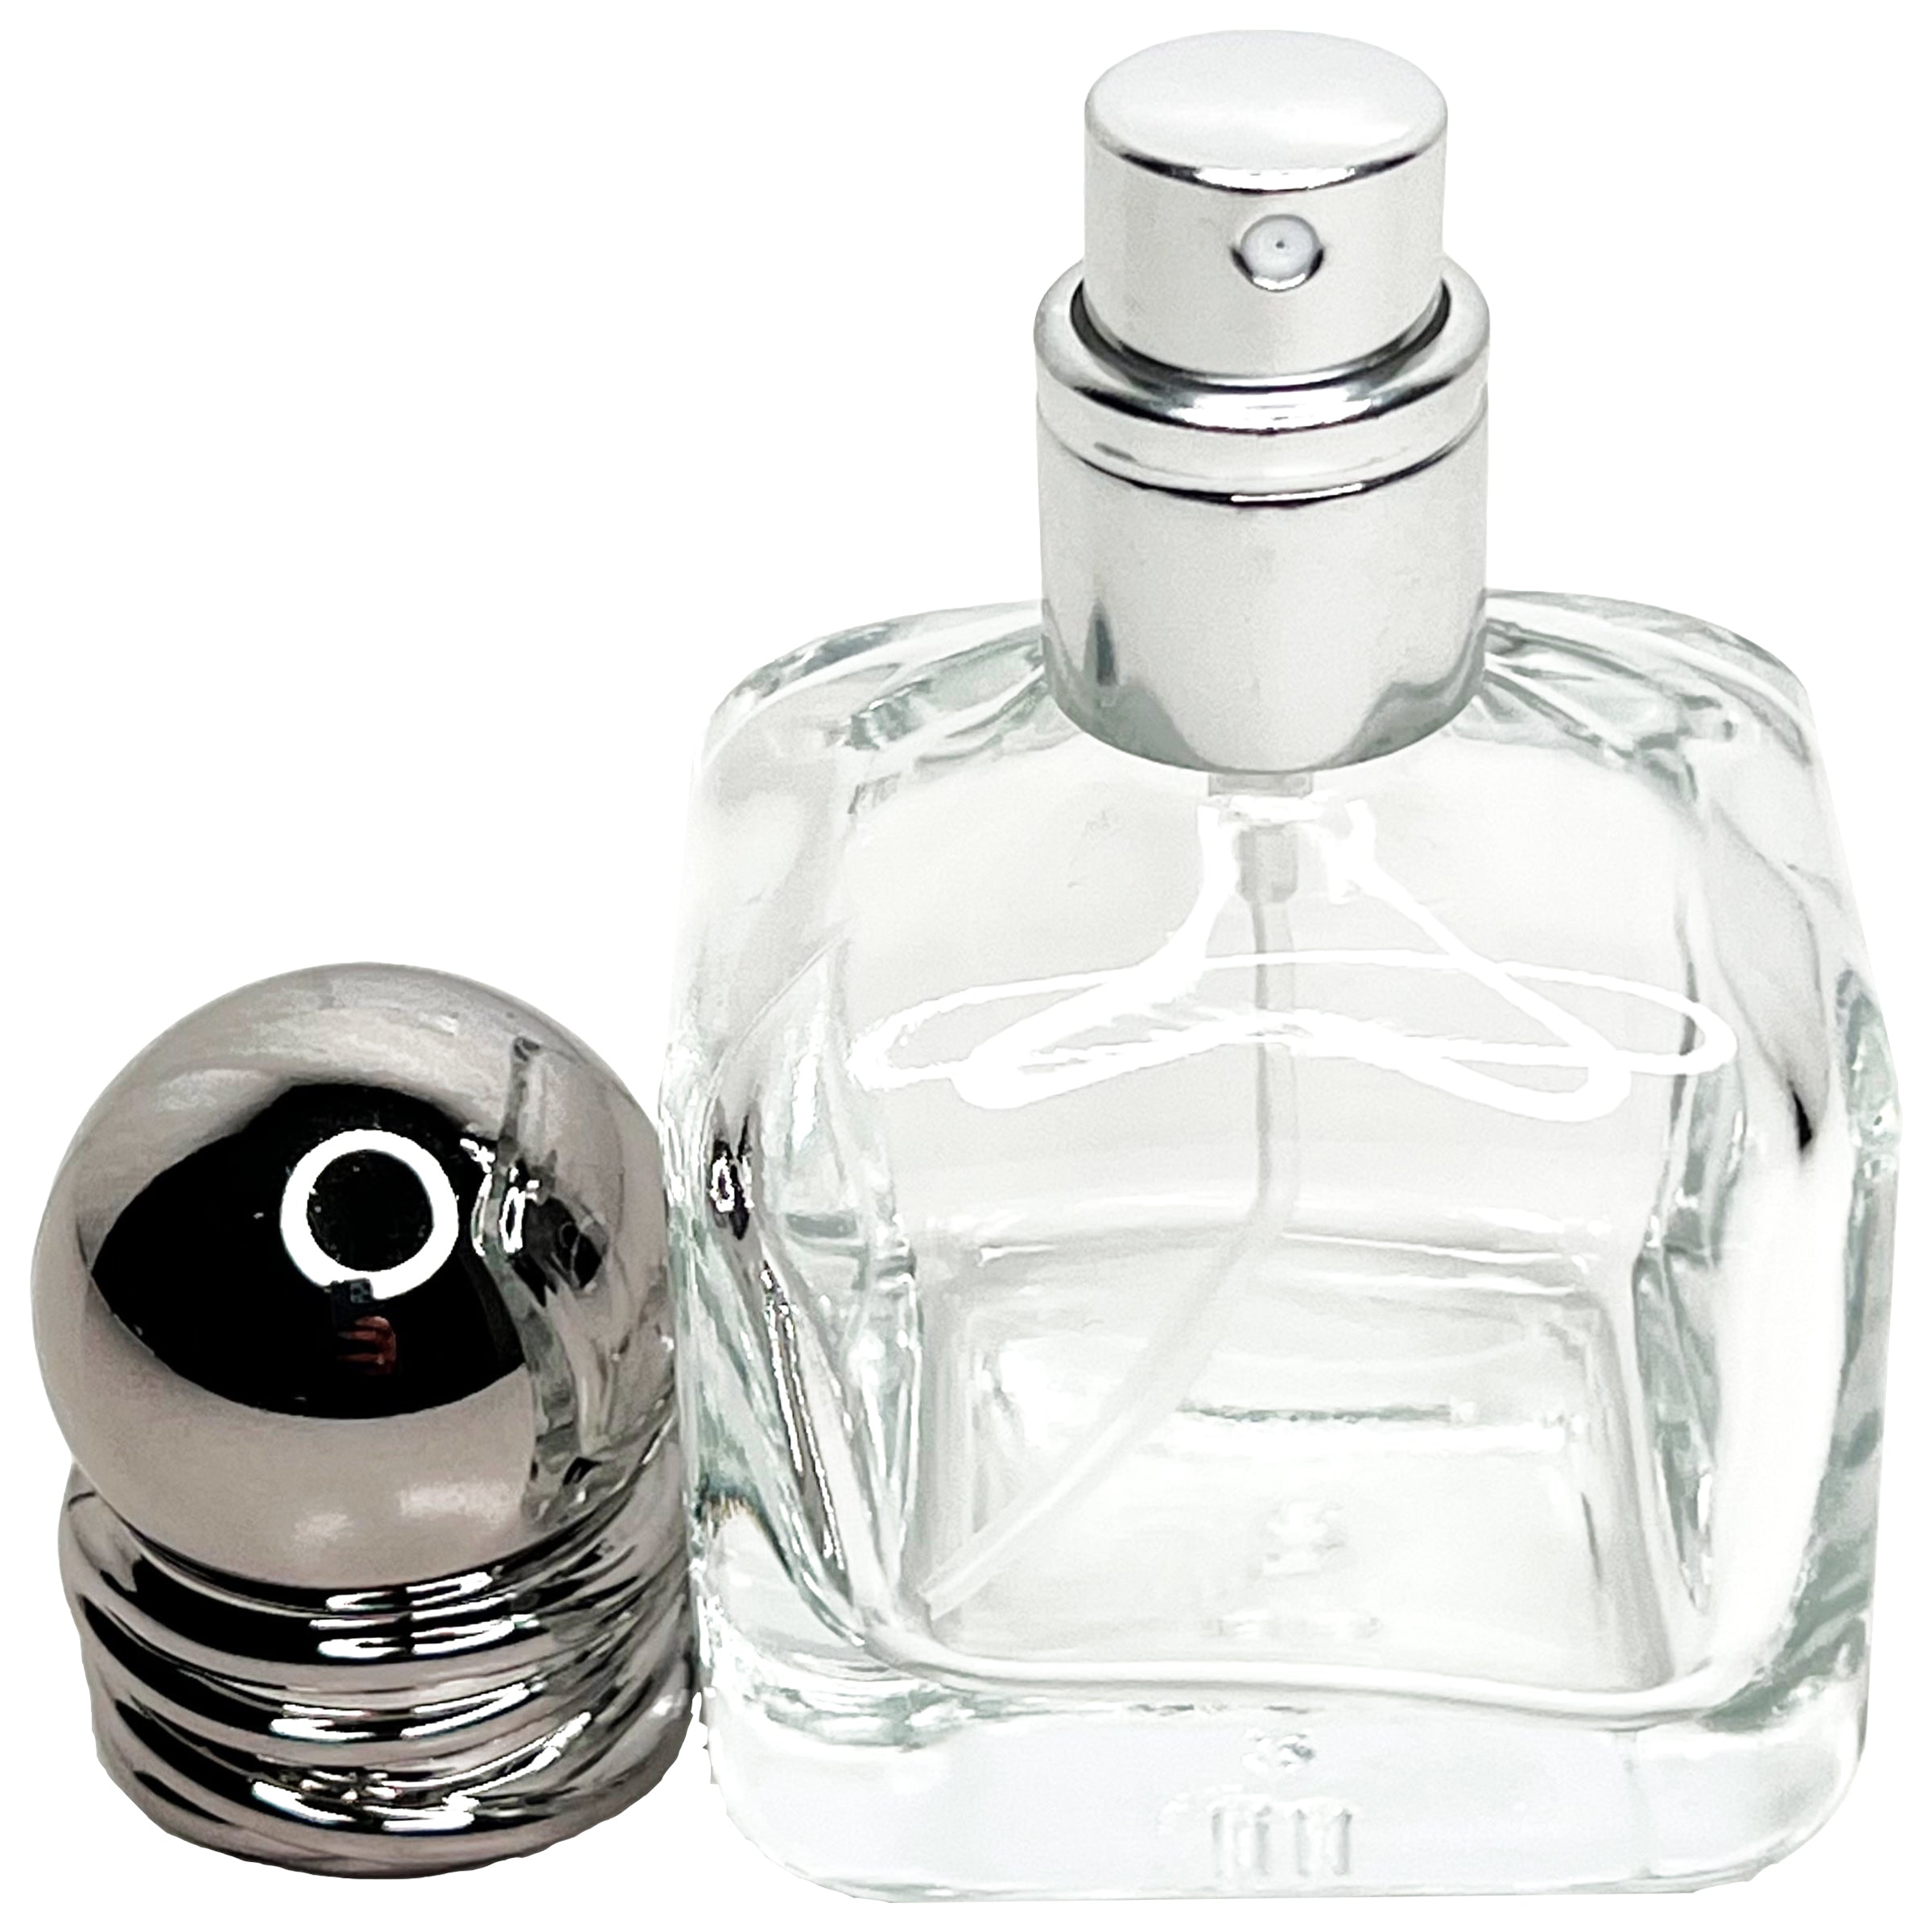 30ml 1oz shaker glass perfume spray bottles